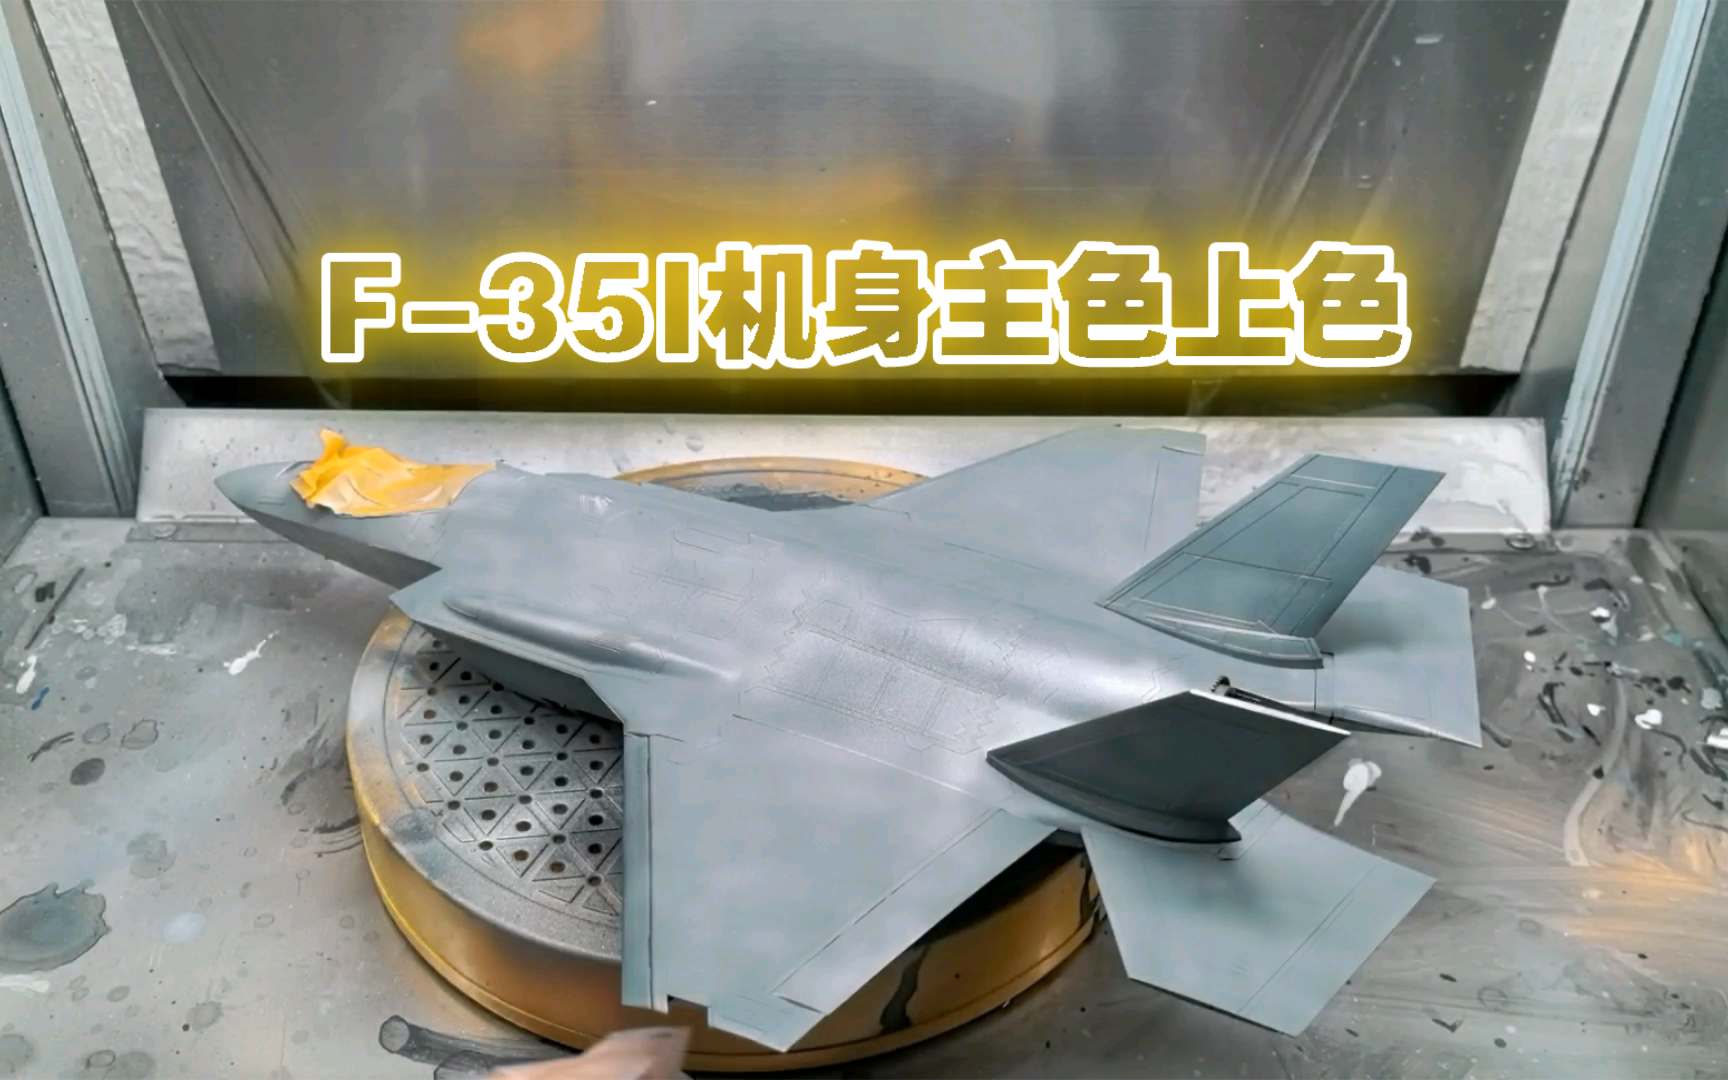 MENG F-35I机身主色上色